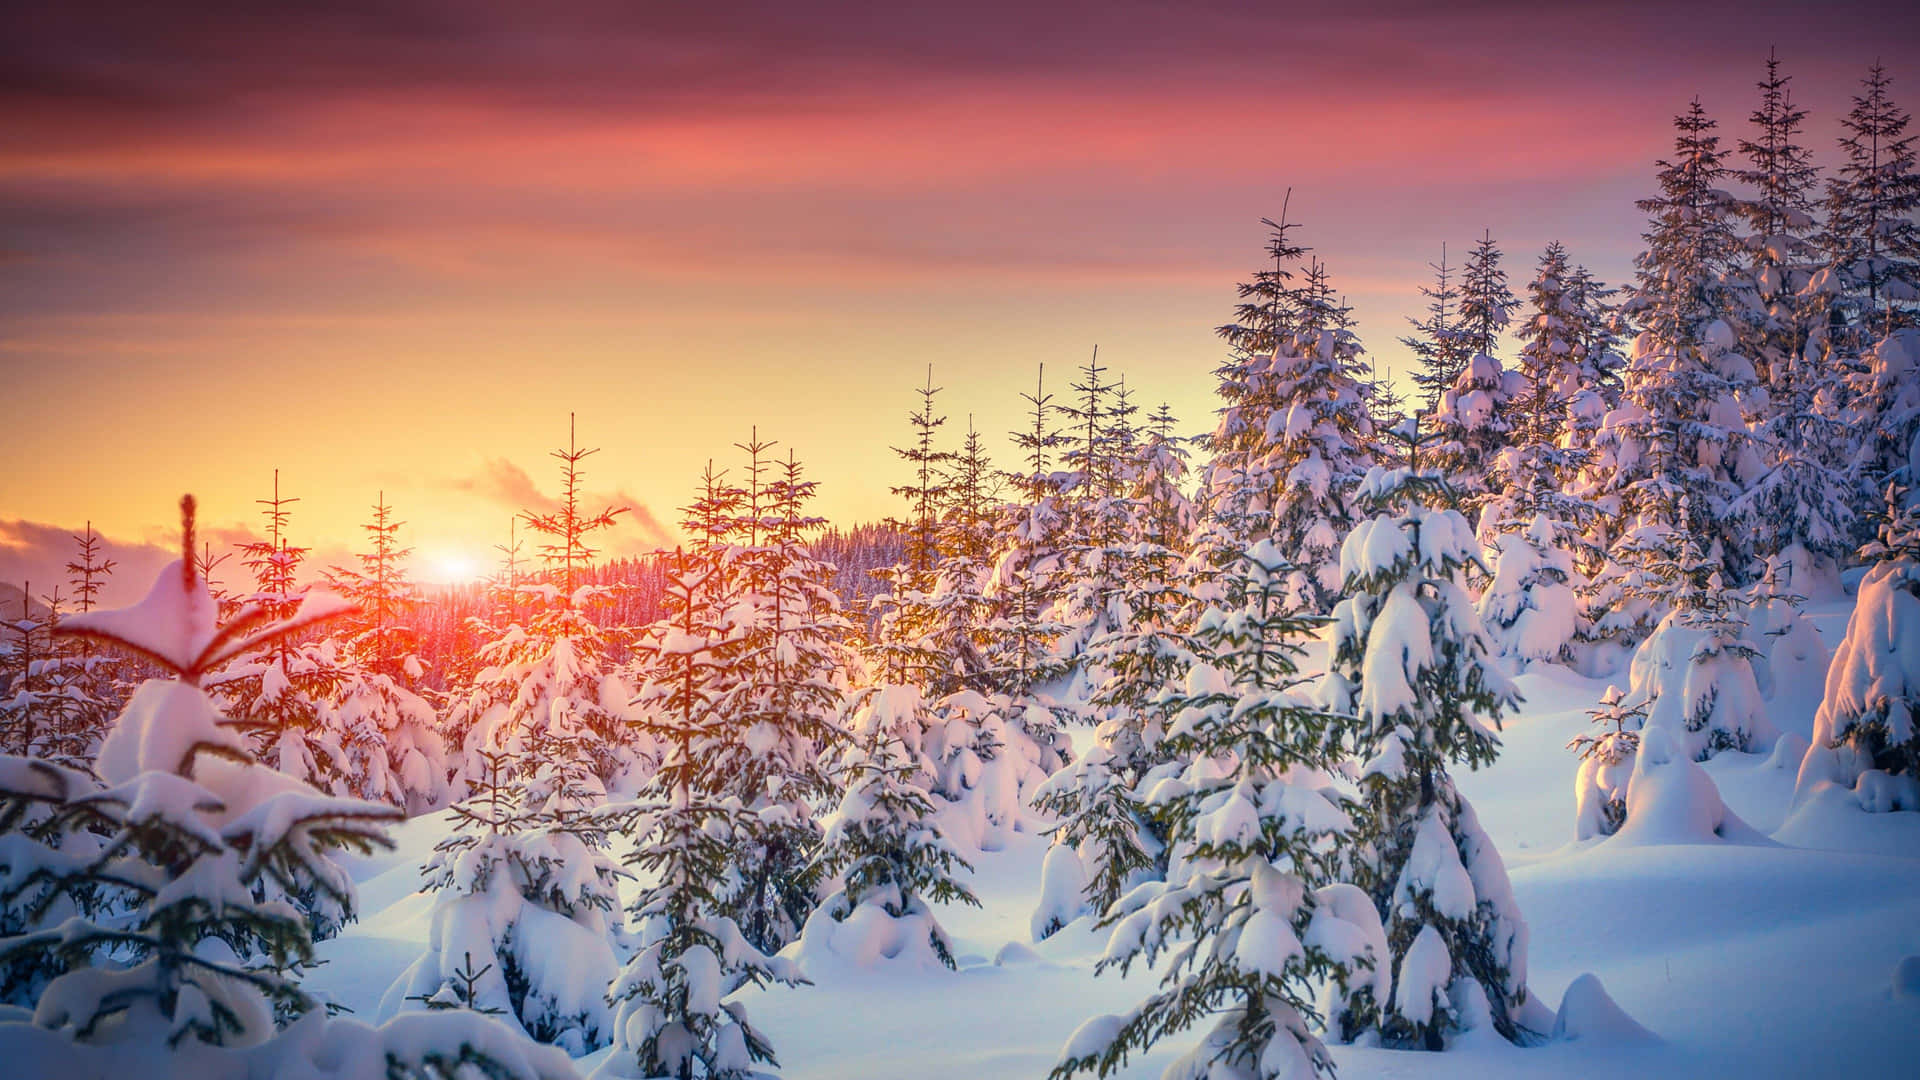 Winter Sun Shining on Snowy Landscape Wallpaper